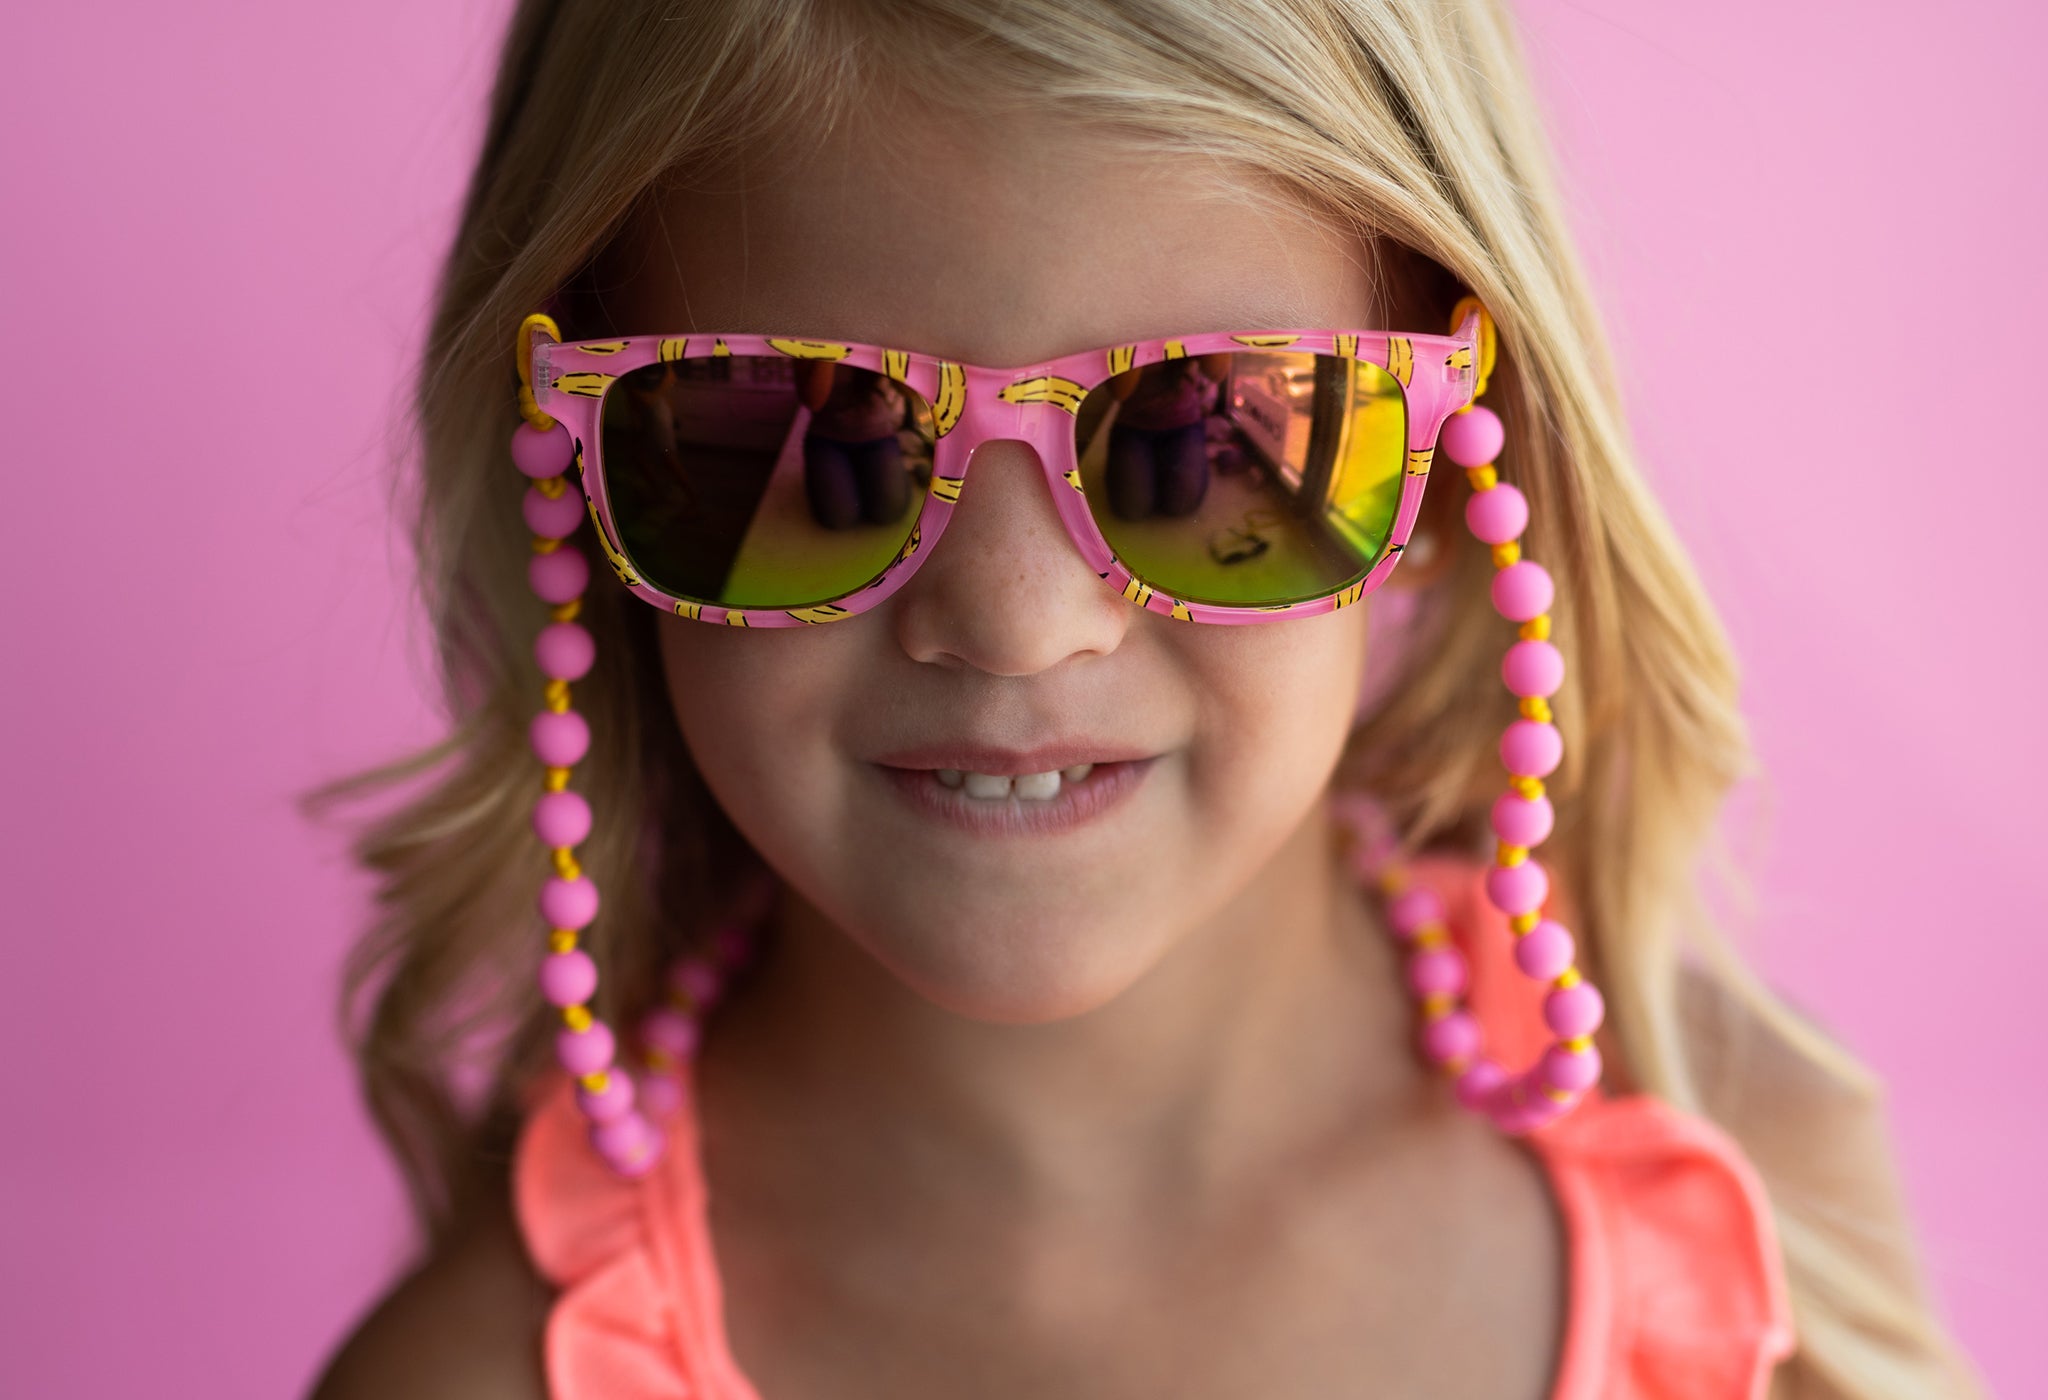 DIY Sunglasses Strand - Cara & Co Tutorials